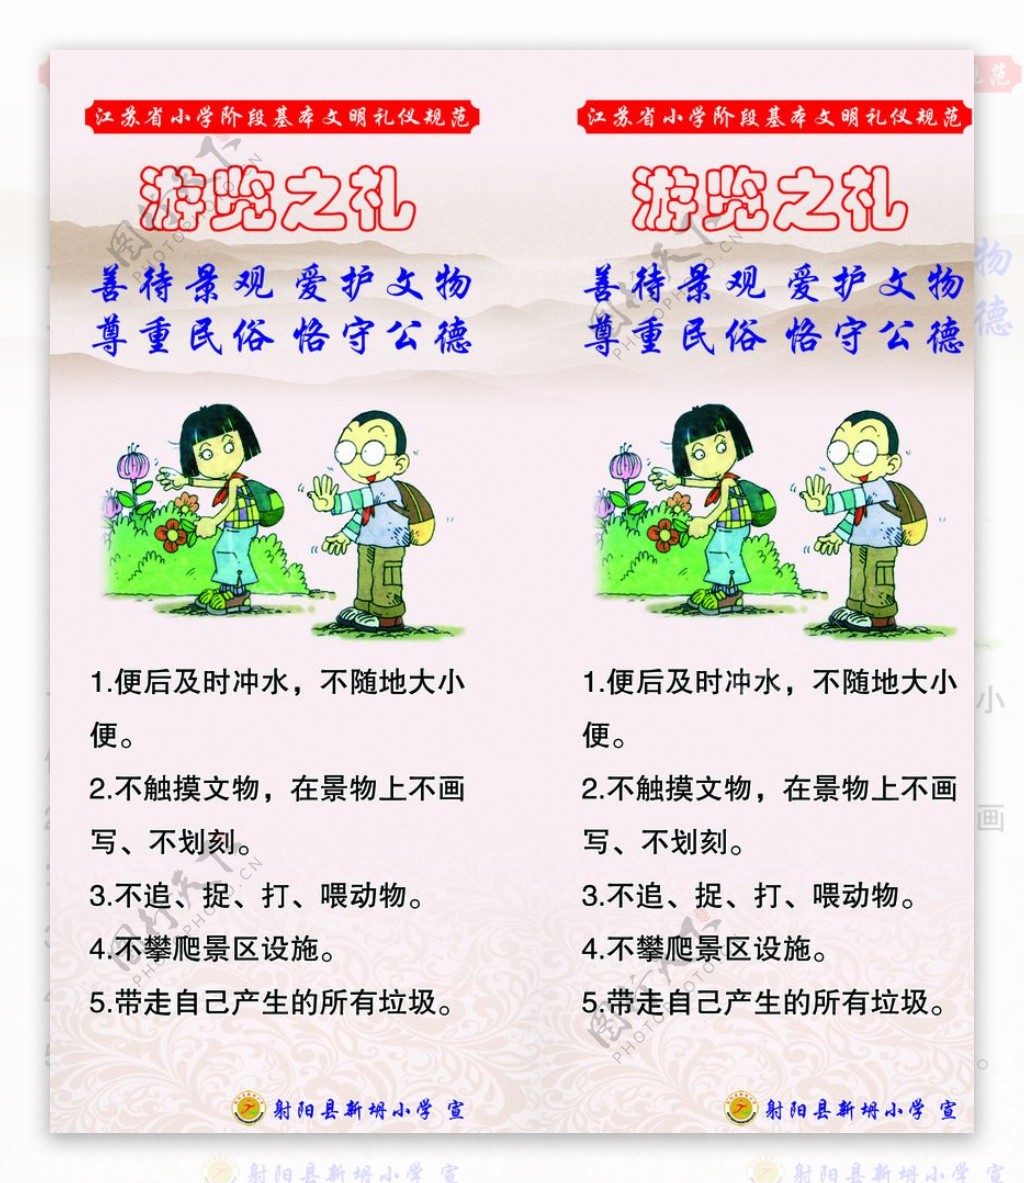 江苏省文明礼仪规范游览之礼图片